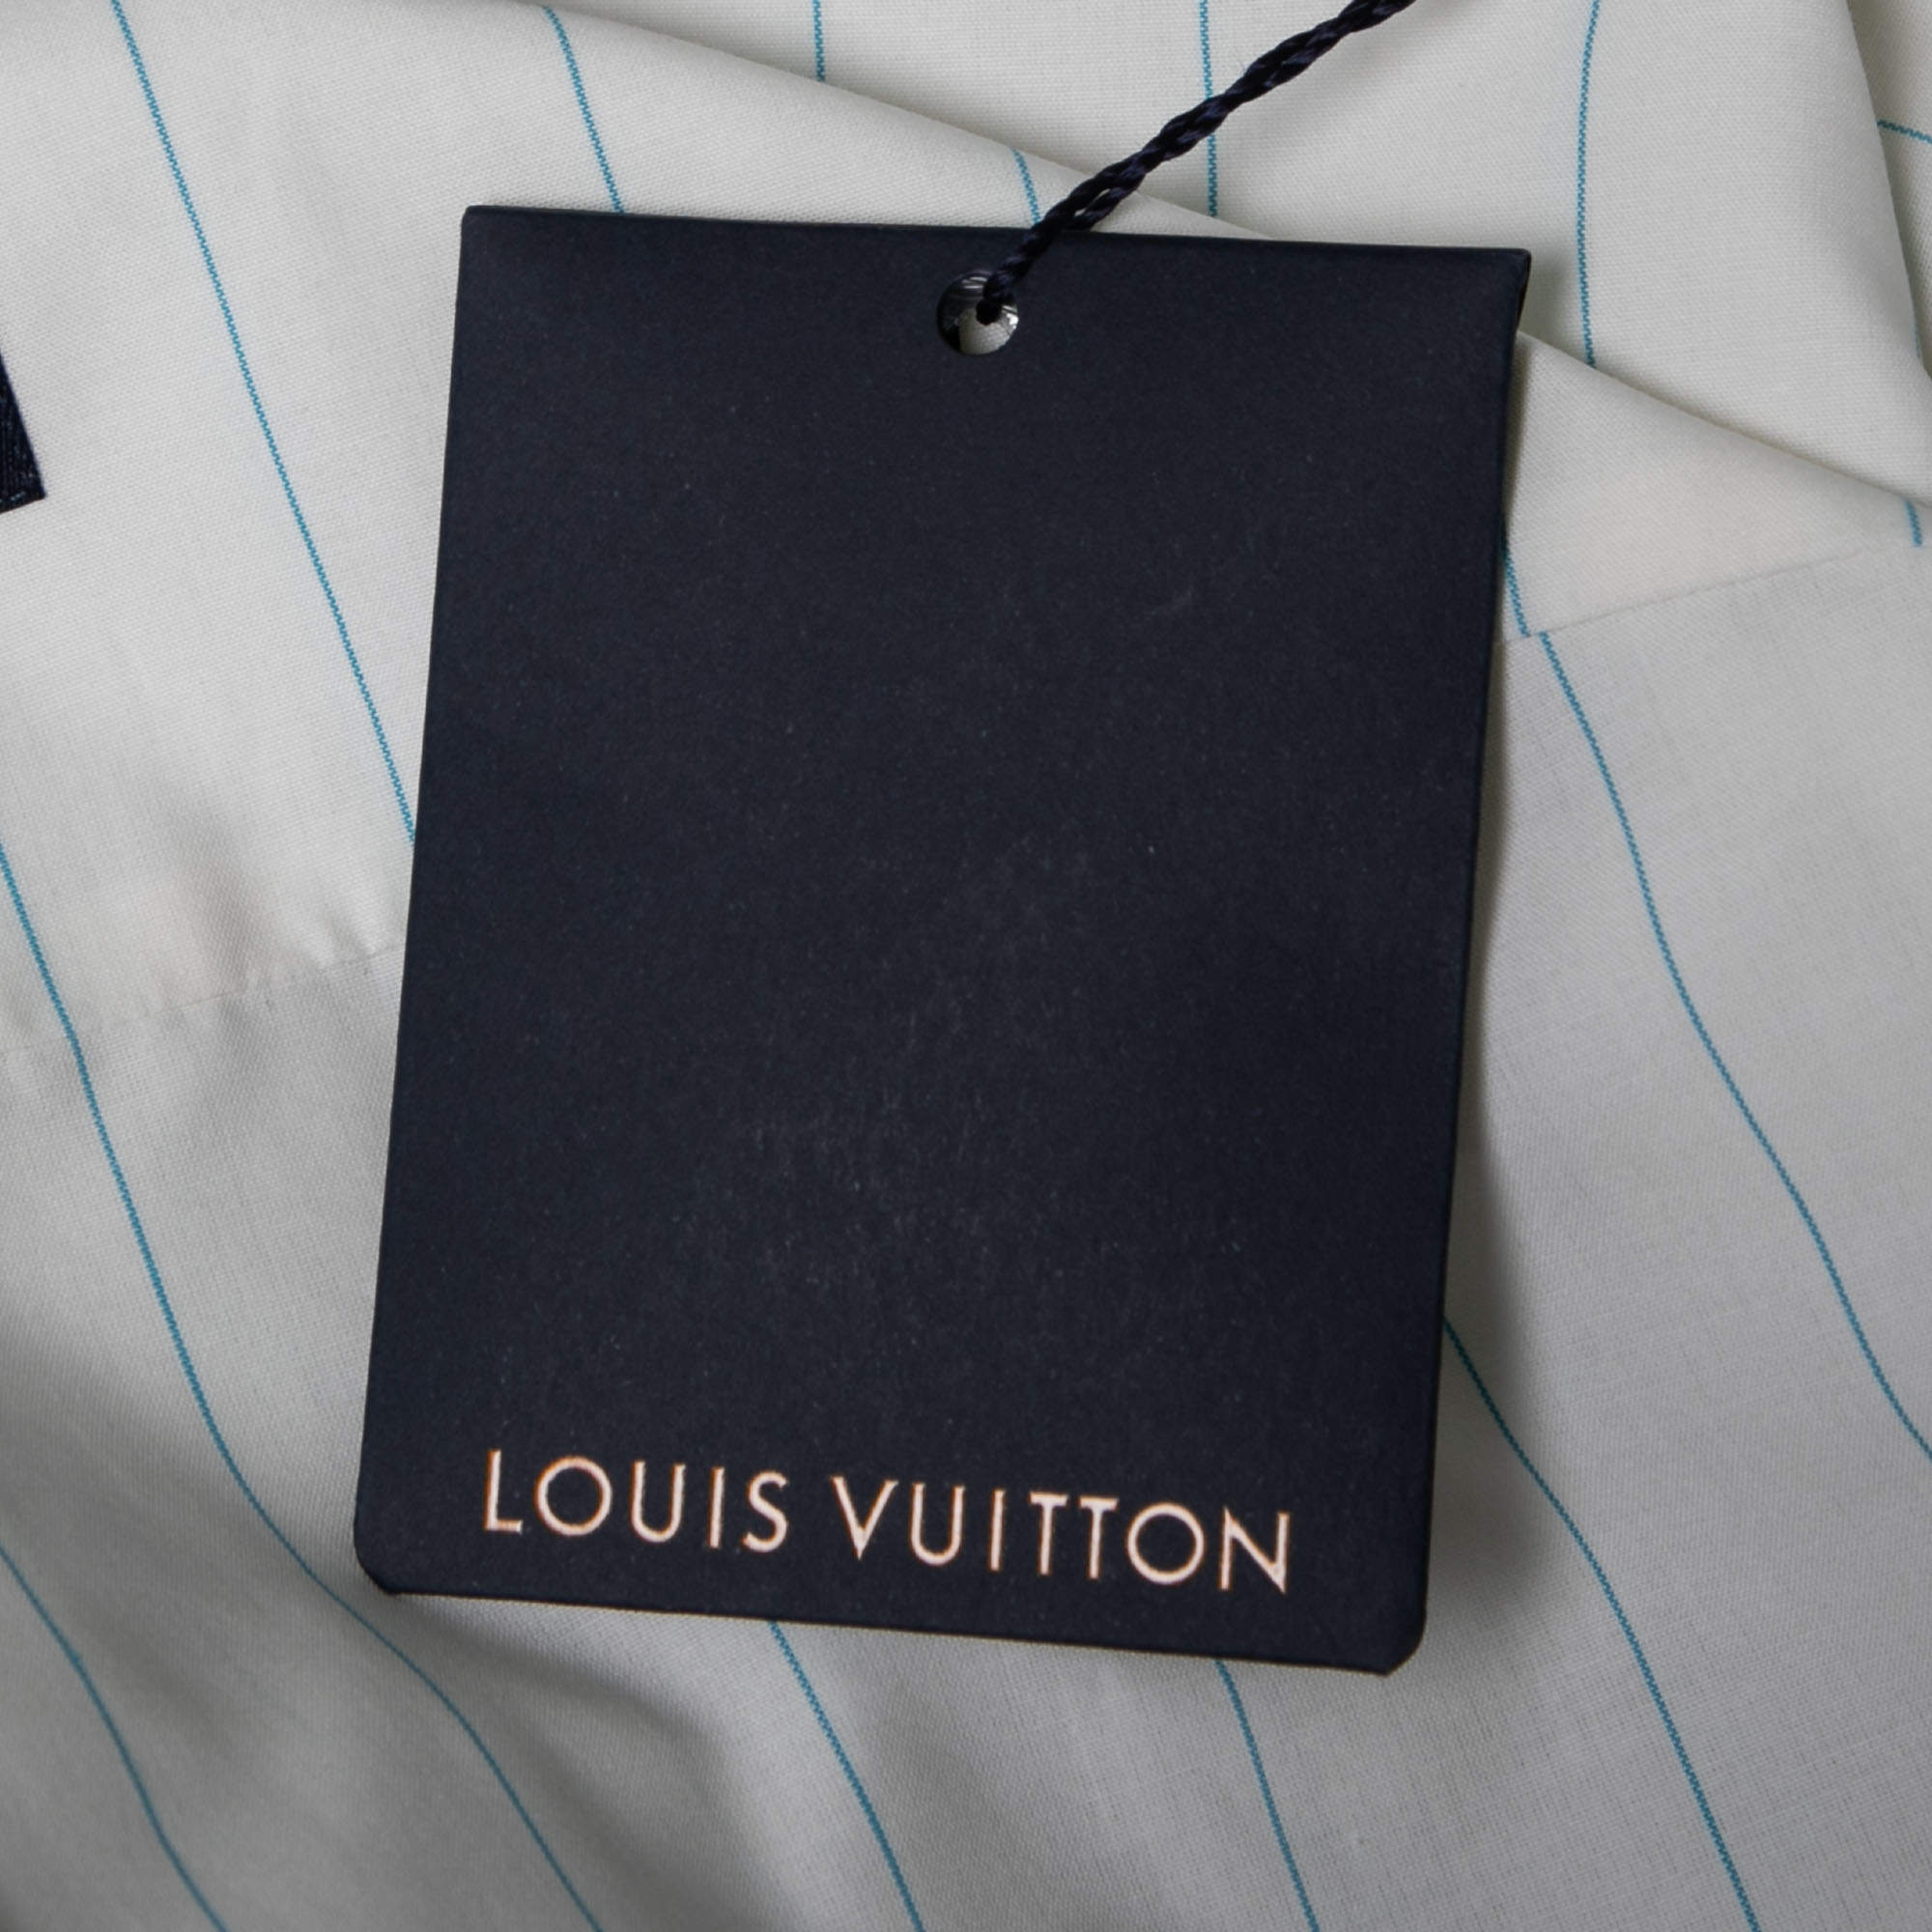 Louis Vuitton Off-White Striped Monogram Spray Print Cotton